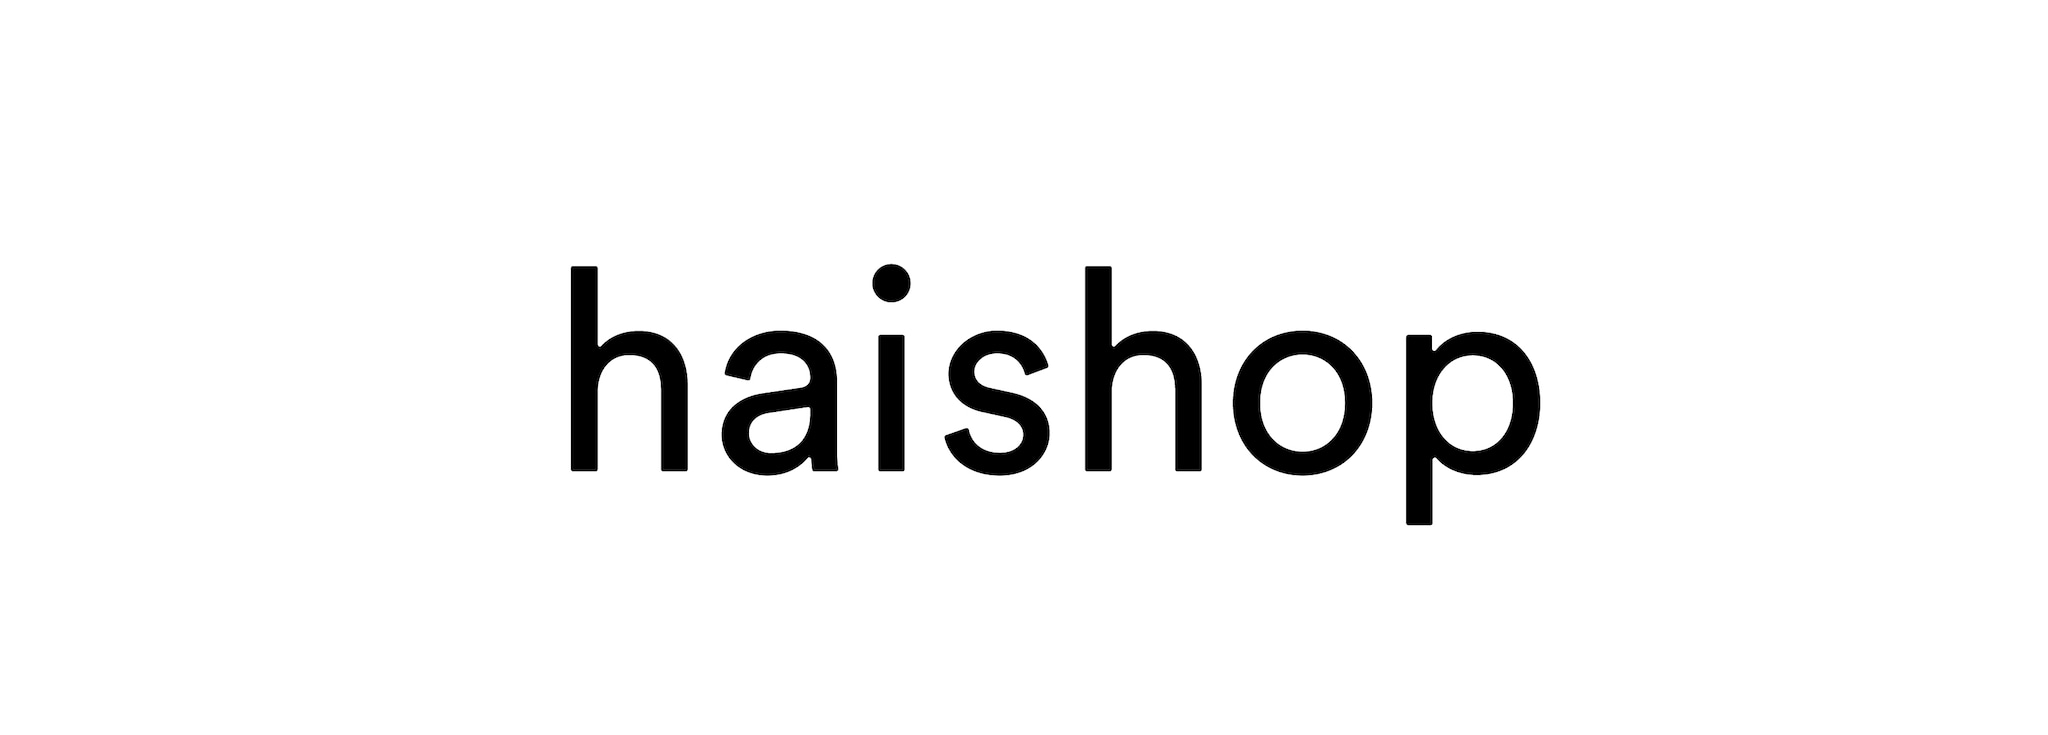 haishop - ハイショップ